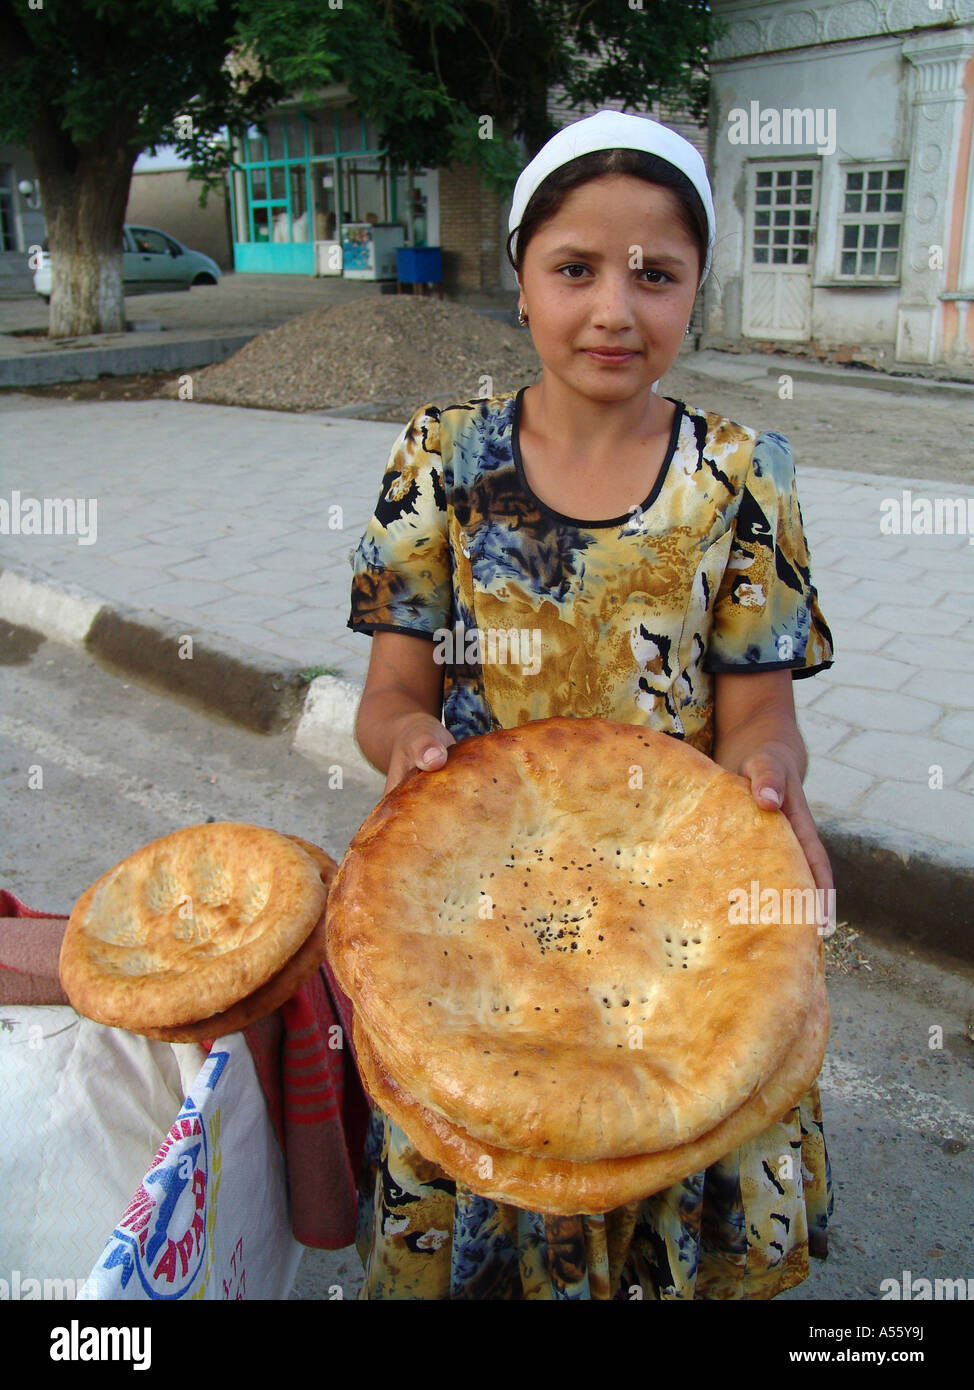 Painet IW2385 tarte cuire l'Asie centrale de l'économie de l'Union soviétique de l'alimentation de l'enfant images islam musulman du travail du commerce de la route de la soie Ouzbékistan Banque D'Images